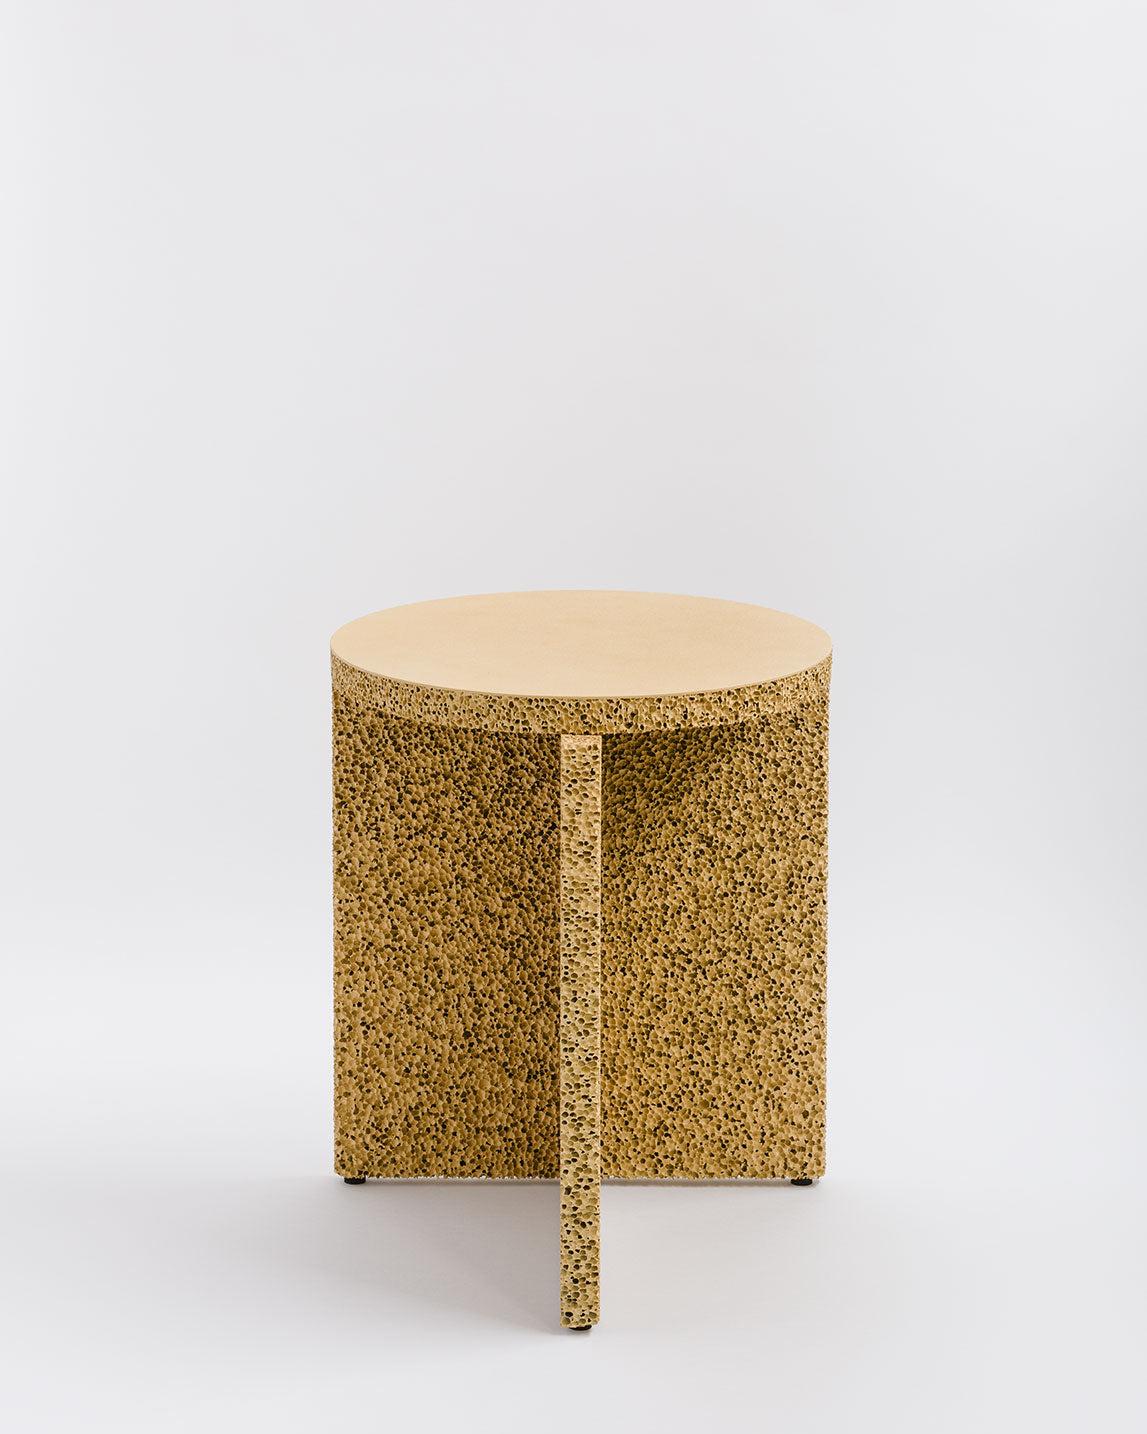 Kleiner Tisch aus natürlichem Meeresschwamm von Calen Knauf
Abmessungen: T 40 x B 35 x H 35 cm
MATERIALIEN: Lackiertes Aluminium
Auch verfügbar: Individuelle Farben und Größen sind möglich.

Der Sponge Table ist ein skulpturaler Beistelltisch aus